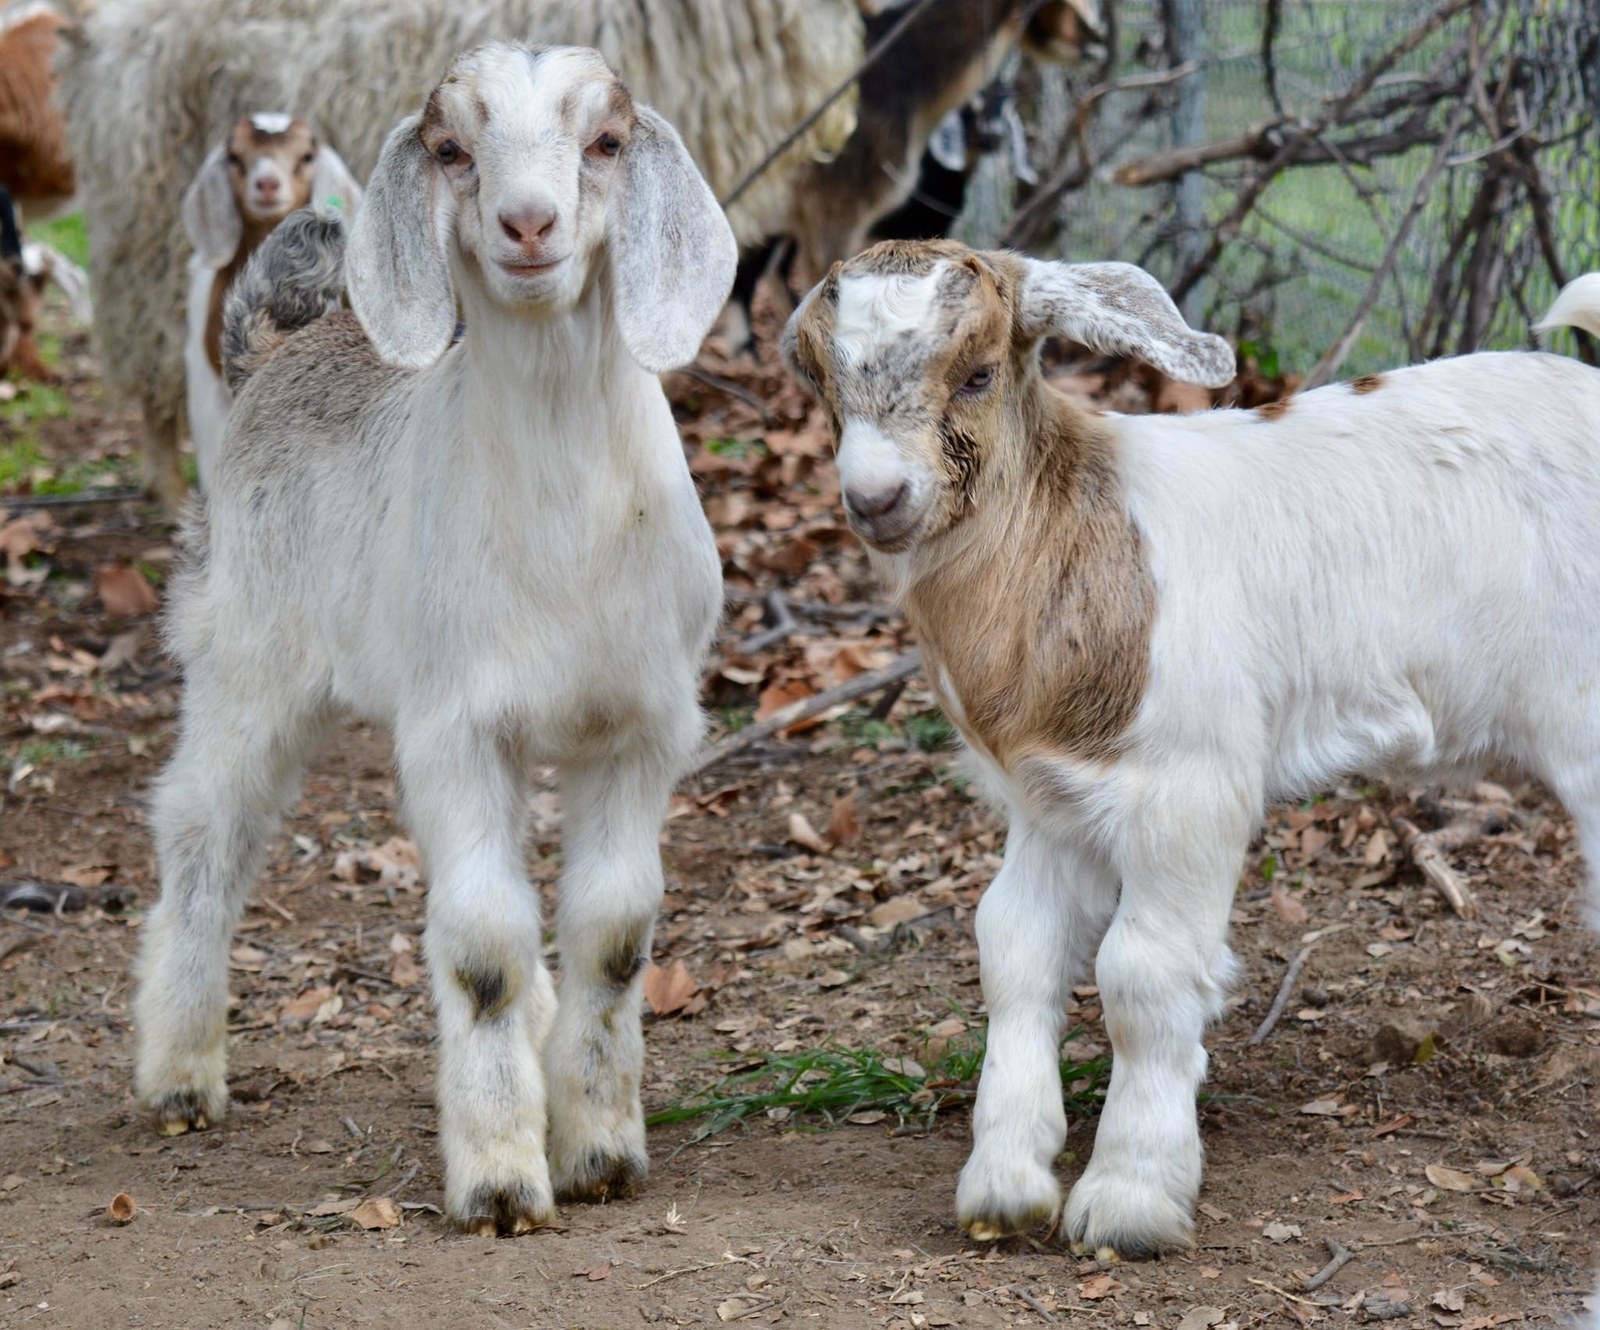 goat twins 二匹の山羊さん 上品なスタイル traderisk.com.br